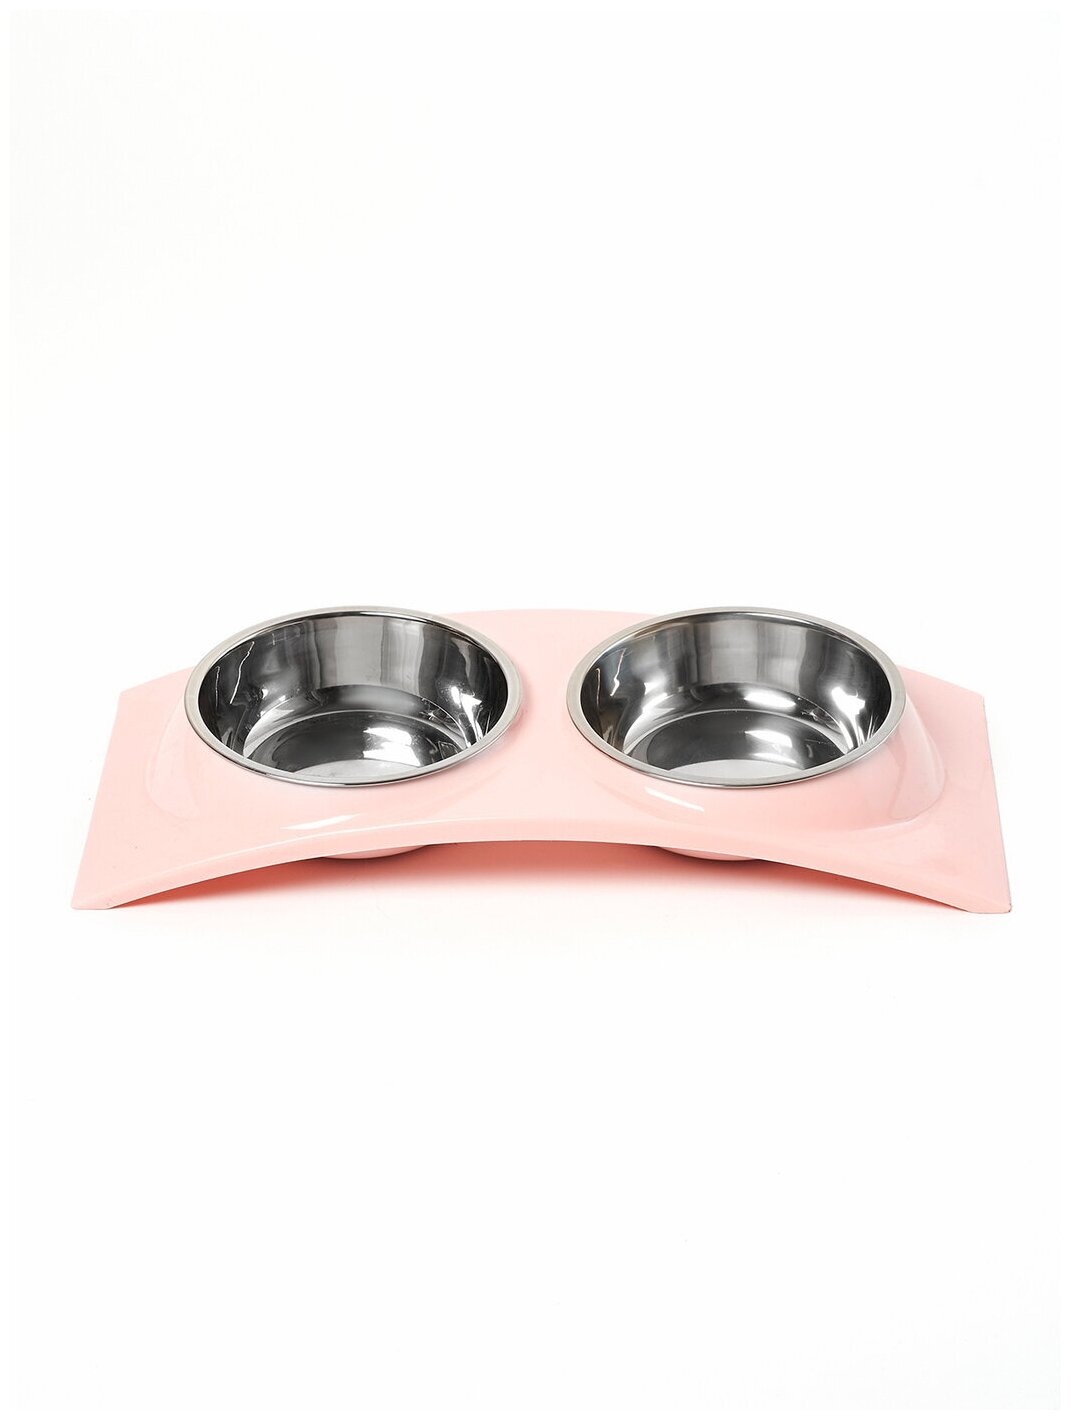 Миска для животных для кошек и собак двойная на подставке, "Любимое лакомство 1", цвет: розовый, 38 см х 16,5 см х 5 см